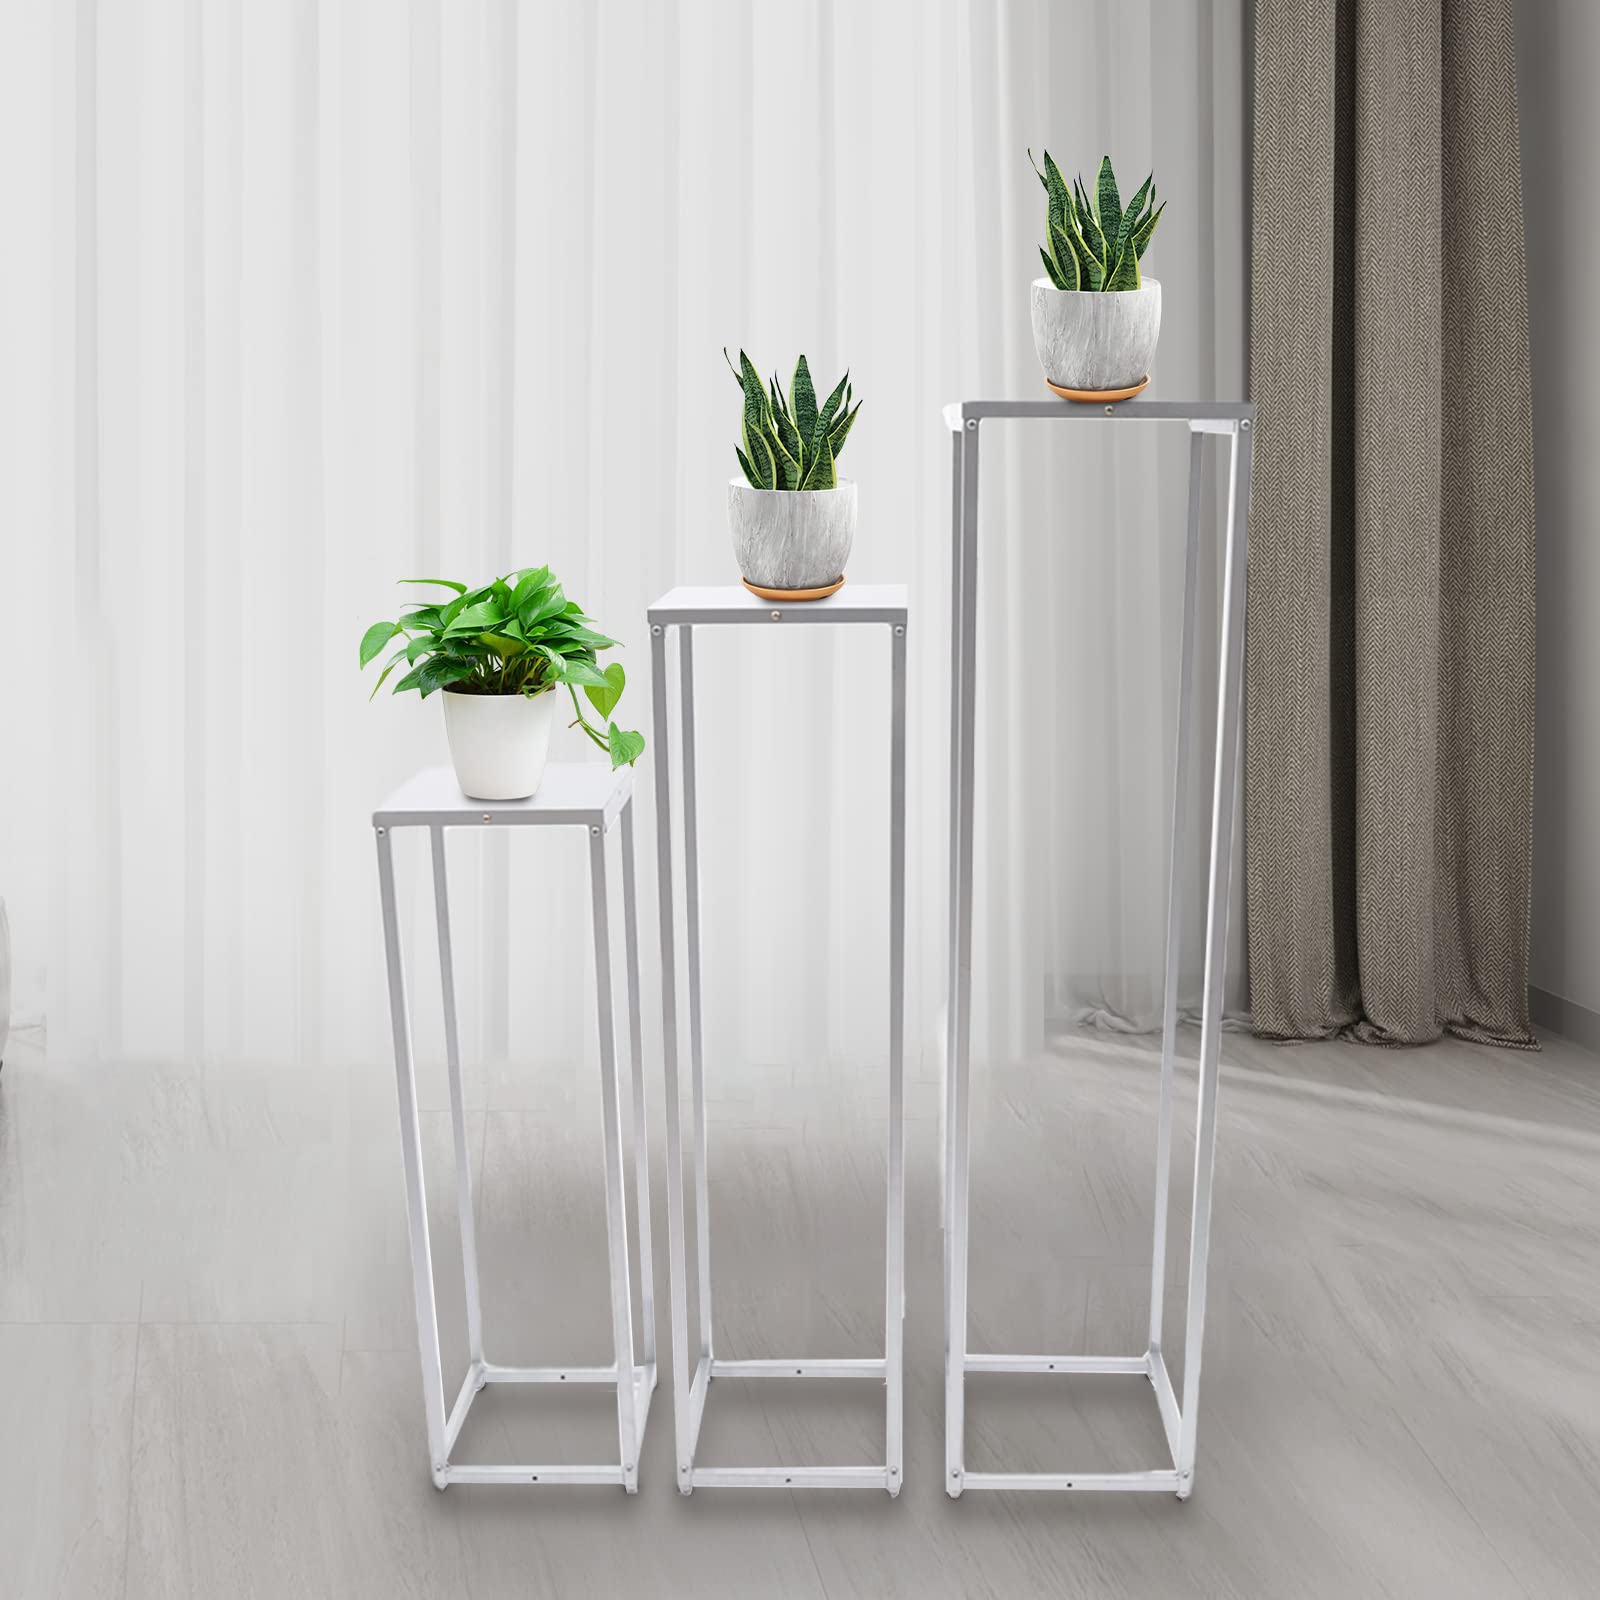 Supporto per piante in metallo argento 3 pezzi Supporto per fiori Colonna a forma di cubo, facile da montare e smontare